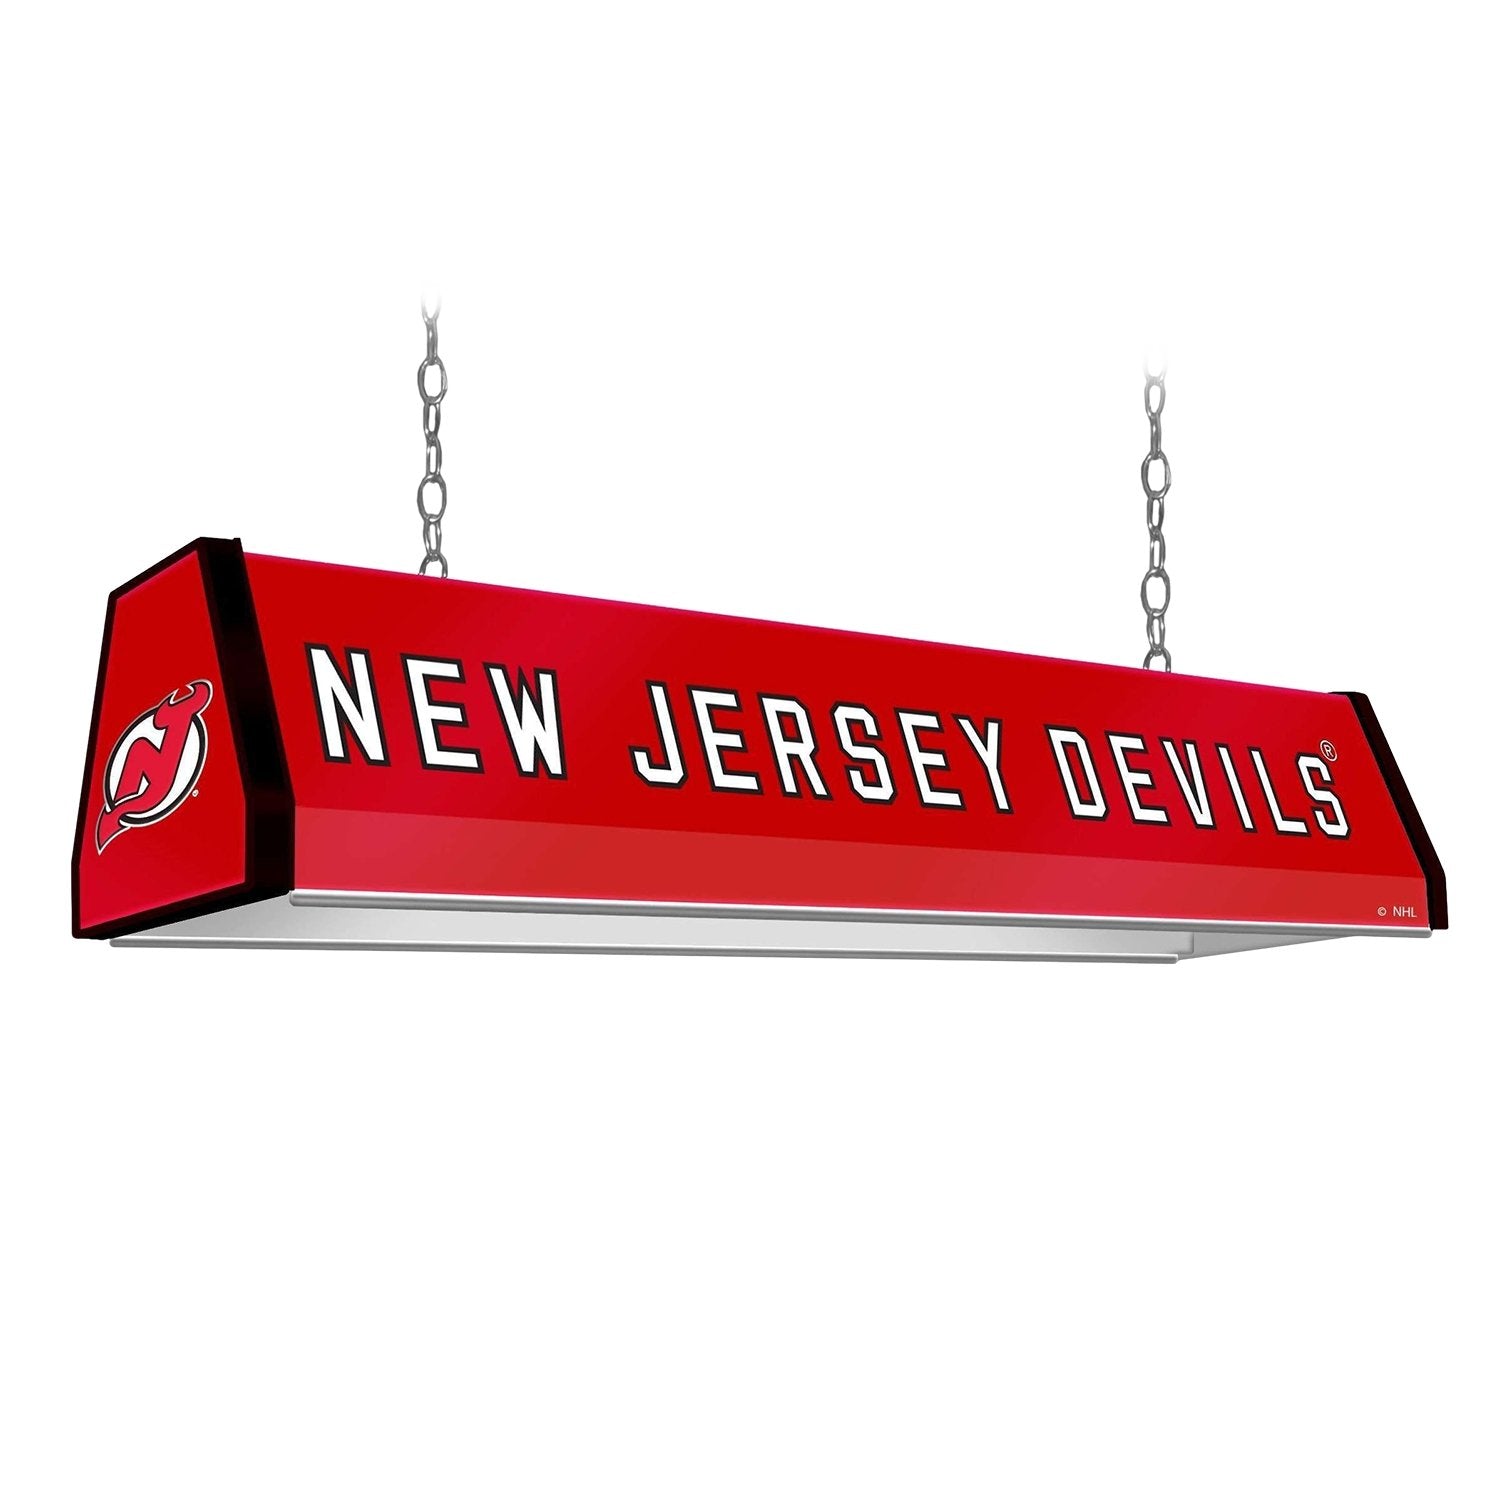 New Jersey Devils: Standard Pool Table Light - The Fan-Brand